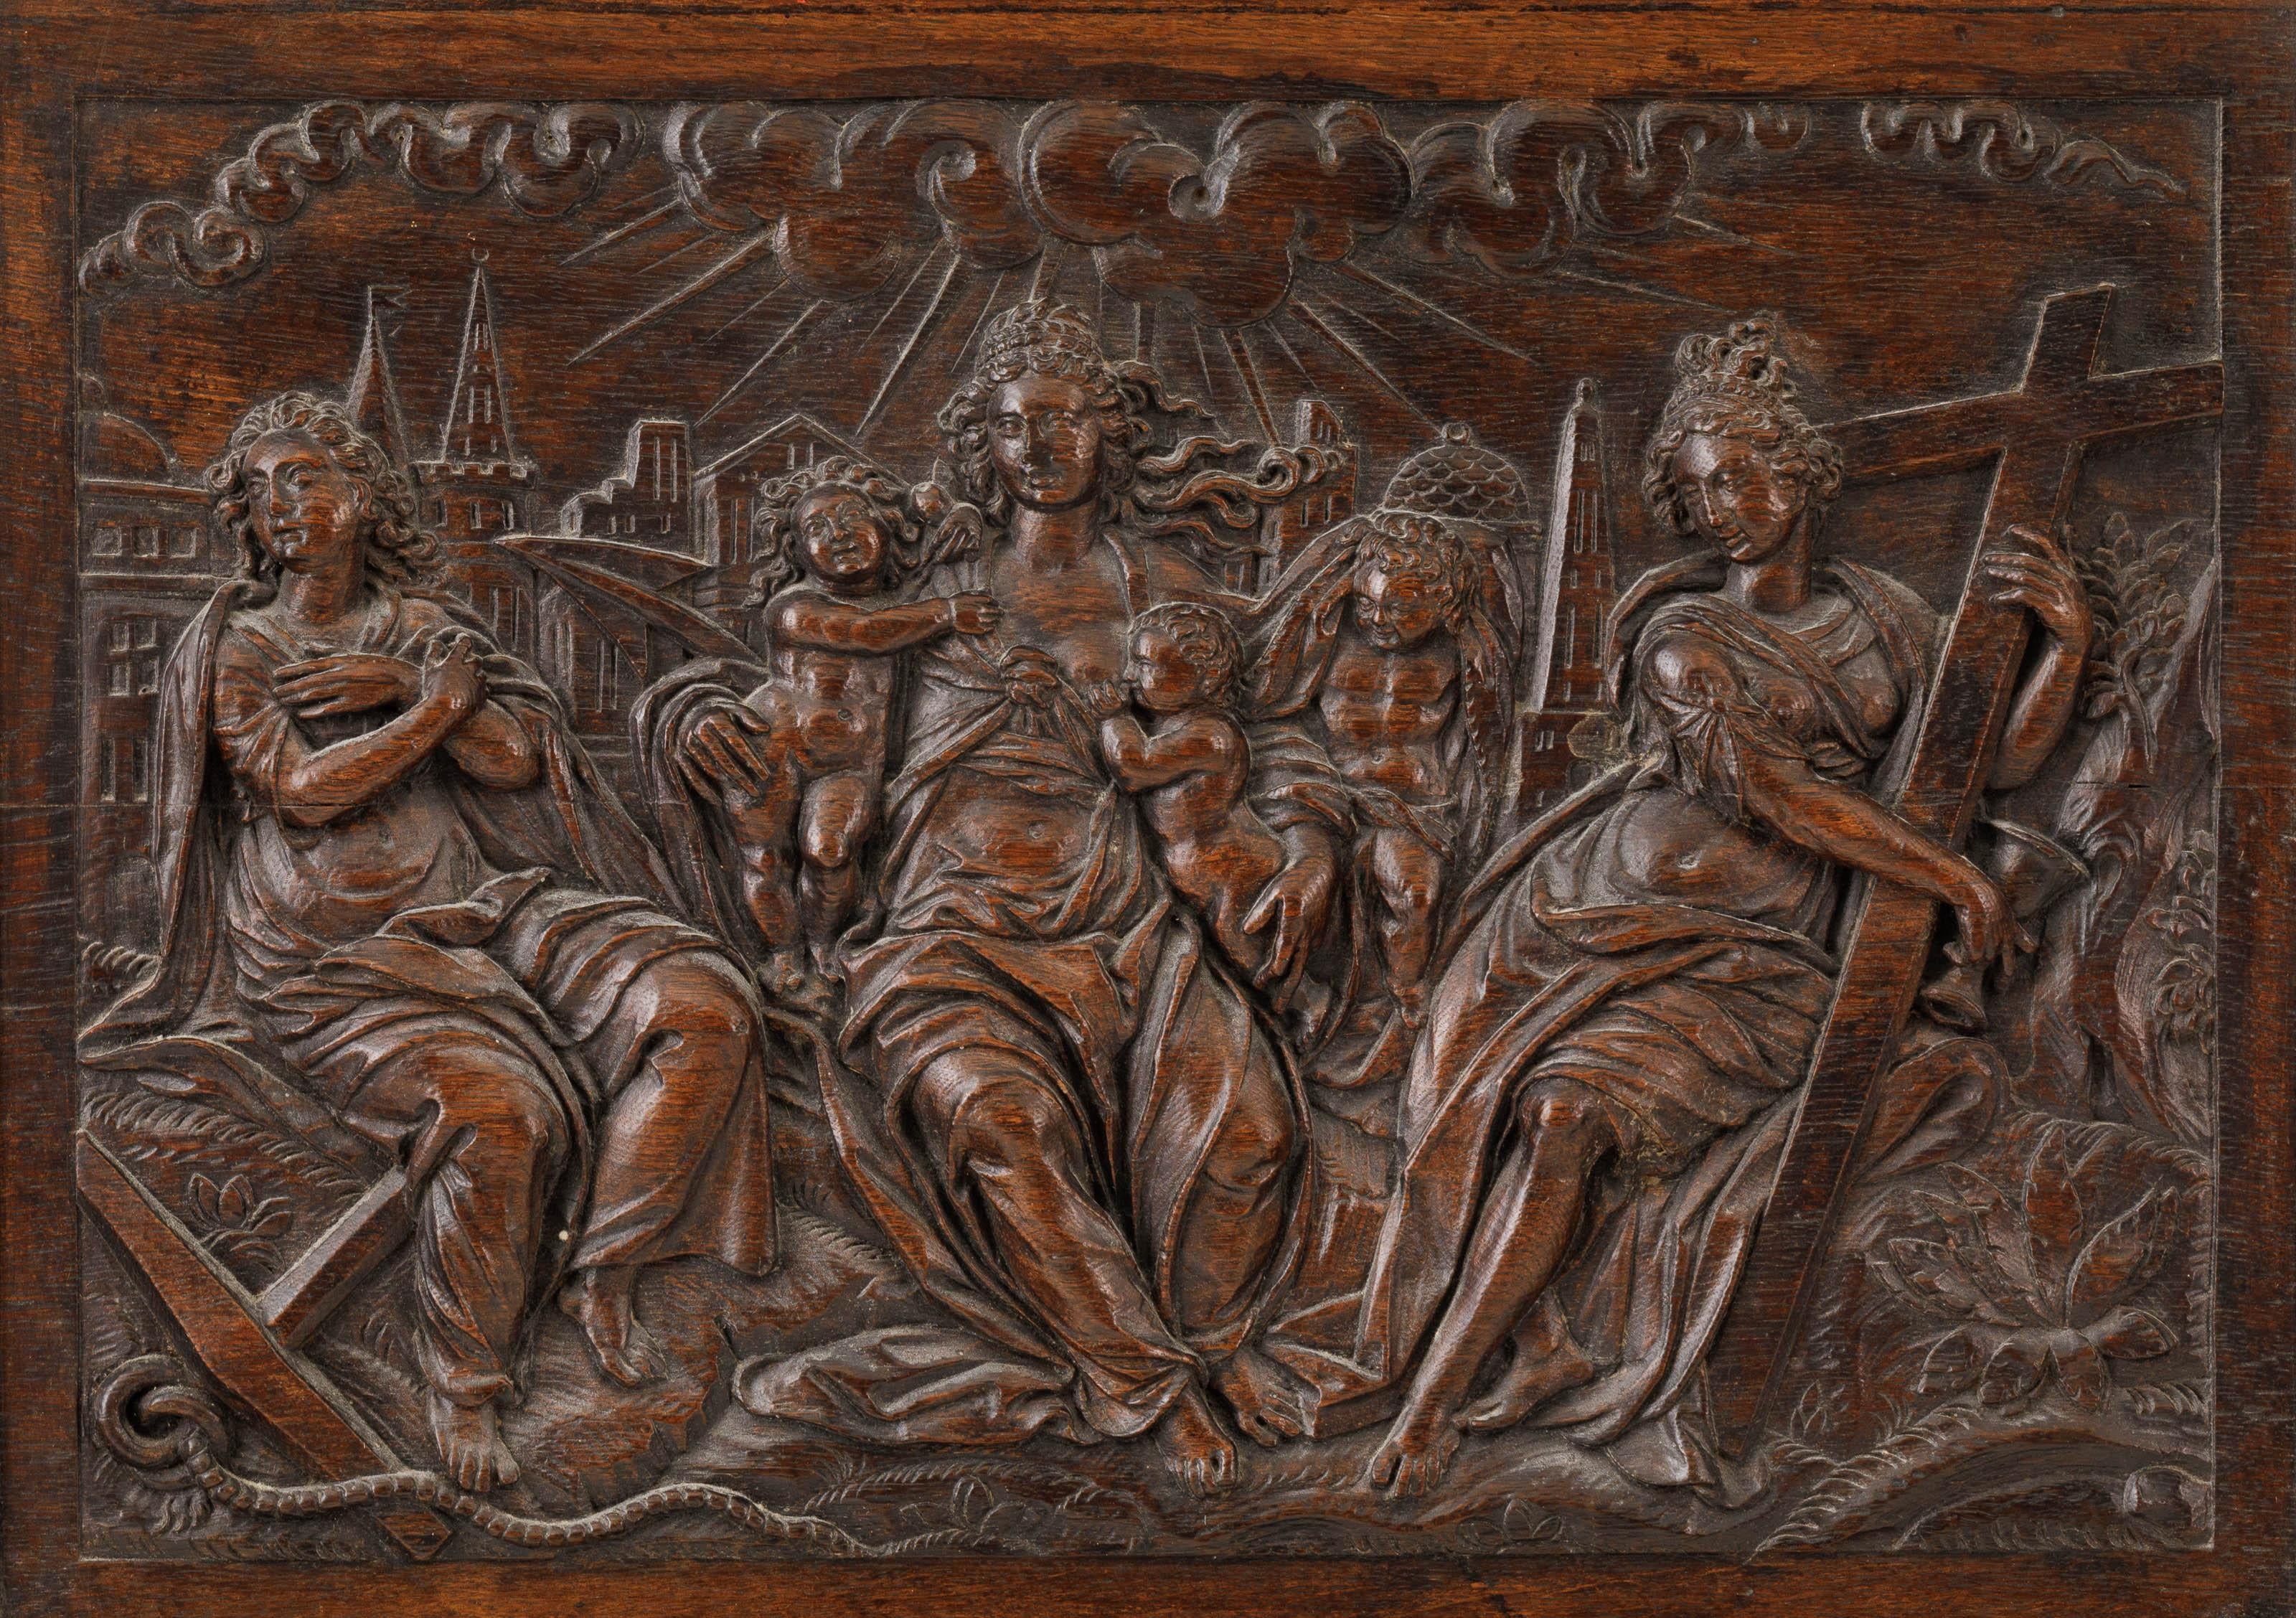 Impressionnant relief en bois du début du XVIIe siècle représentant les trois vertus divines.

D'après Jan Pietersz Saenredam et Hendrik Goltzius
Premier quart du XVIIe siècle ; Pays-Bas septentrionaux
Dimensions approximatives : 35,5 x 50 cm